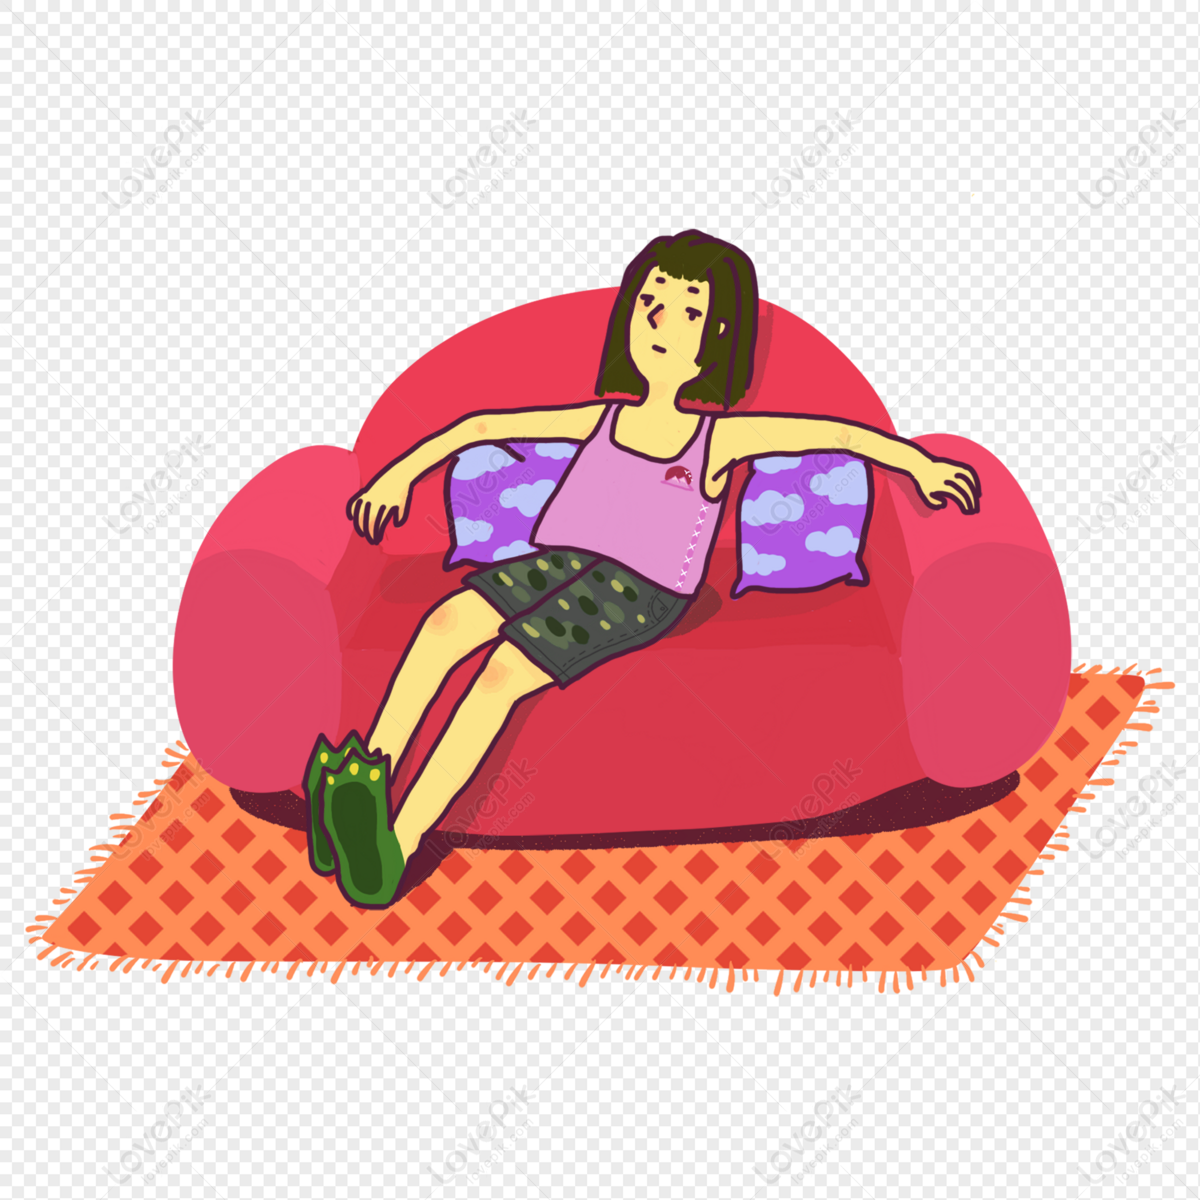 ओटाकू आलसी कार्टून चरित्र बैठे और आराम कर रहे हैं चित्र  डाउनलोड_ग्राफिक्सPRFचित्र आईडी401410323_PSDचित्र  प्रारूपमुफ्त की तस्वीर